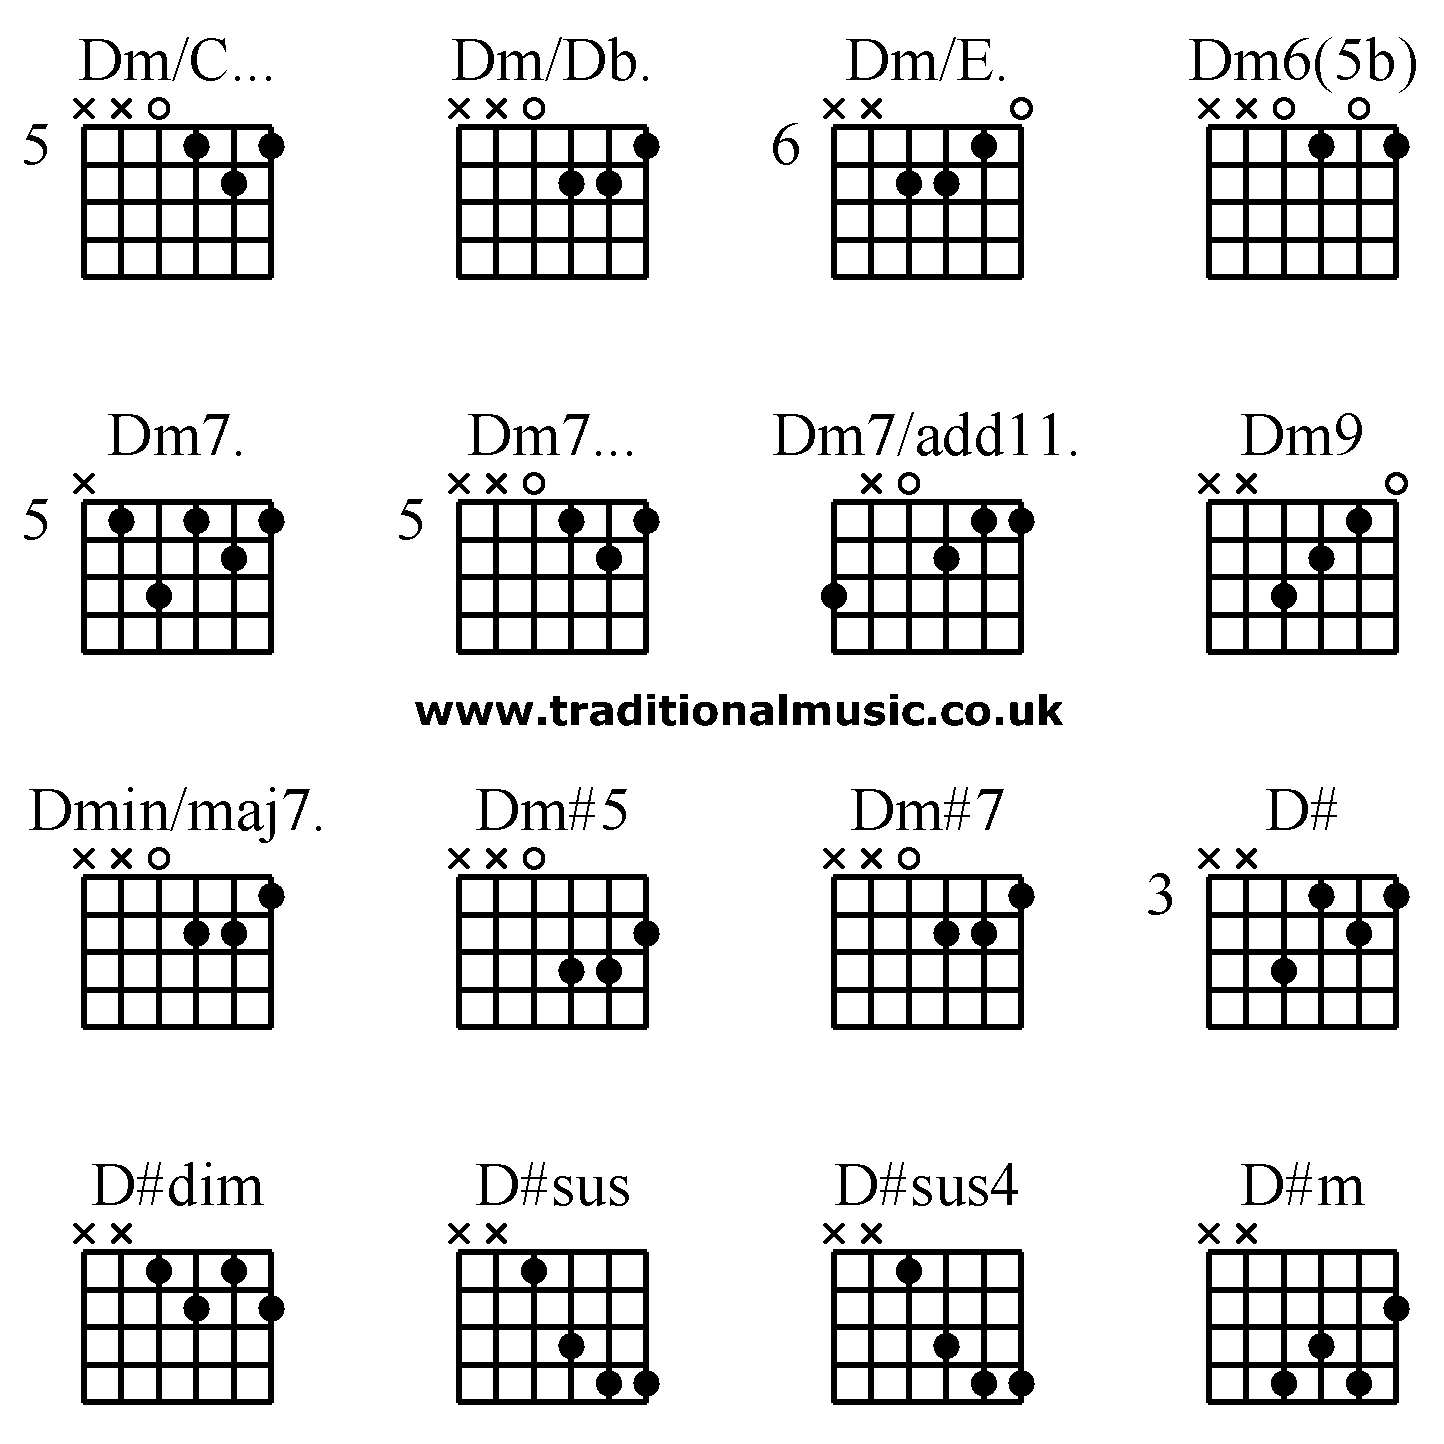 Dm7 Guitar Chord Guitar Chords Advanced Dmc Dmdb Dme Dm65b Dm7 Dm7 Dm7